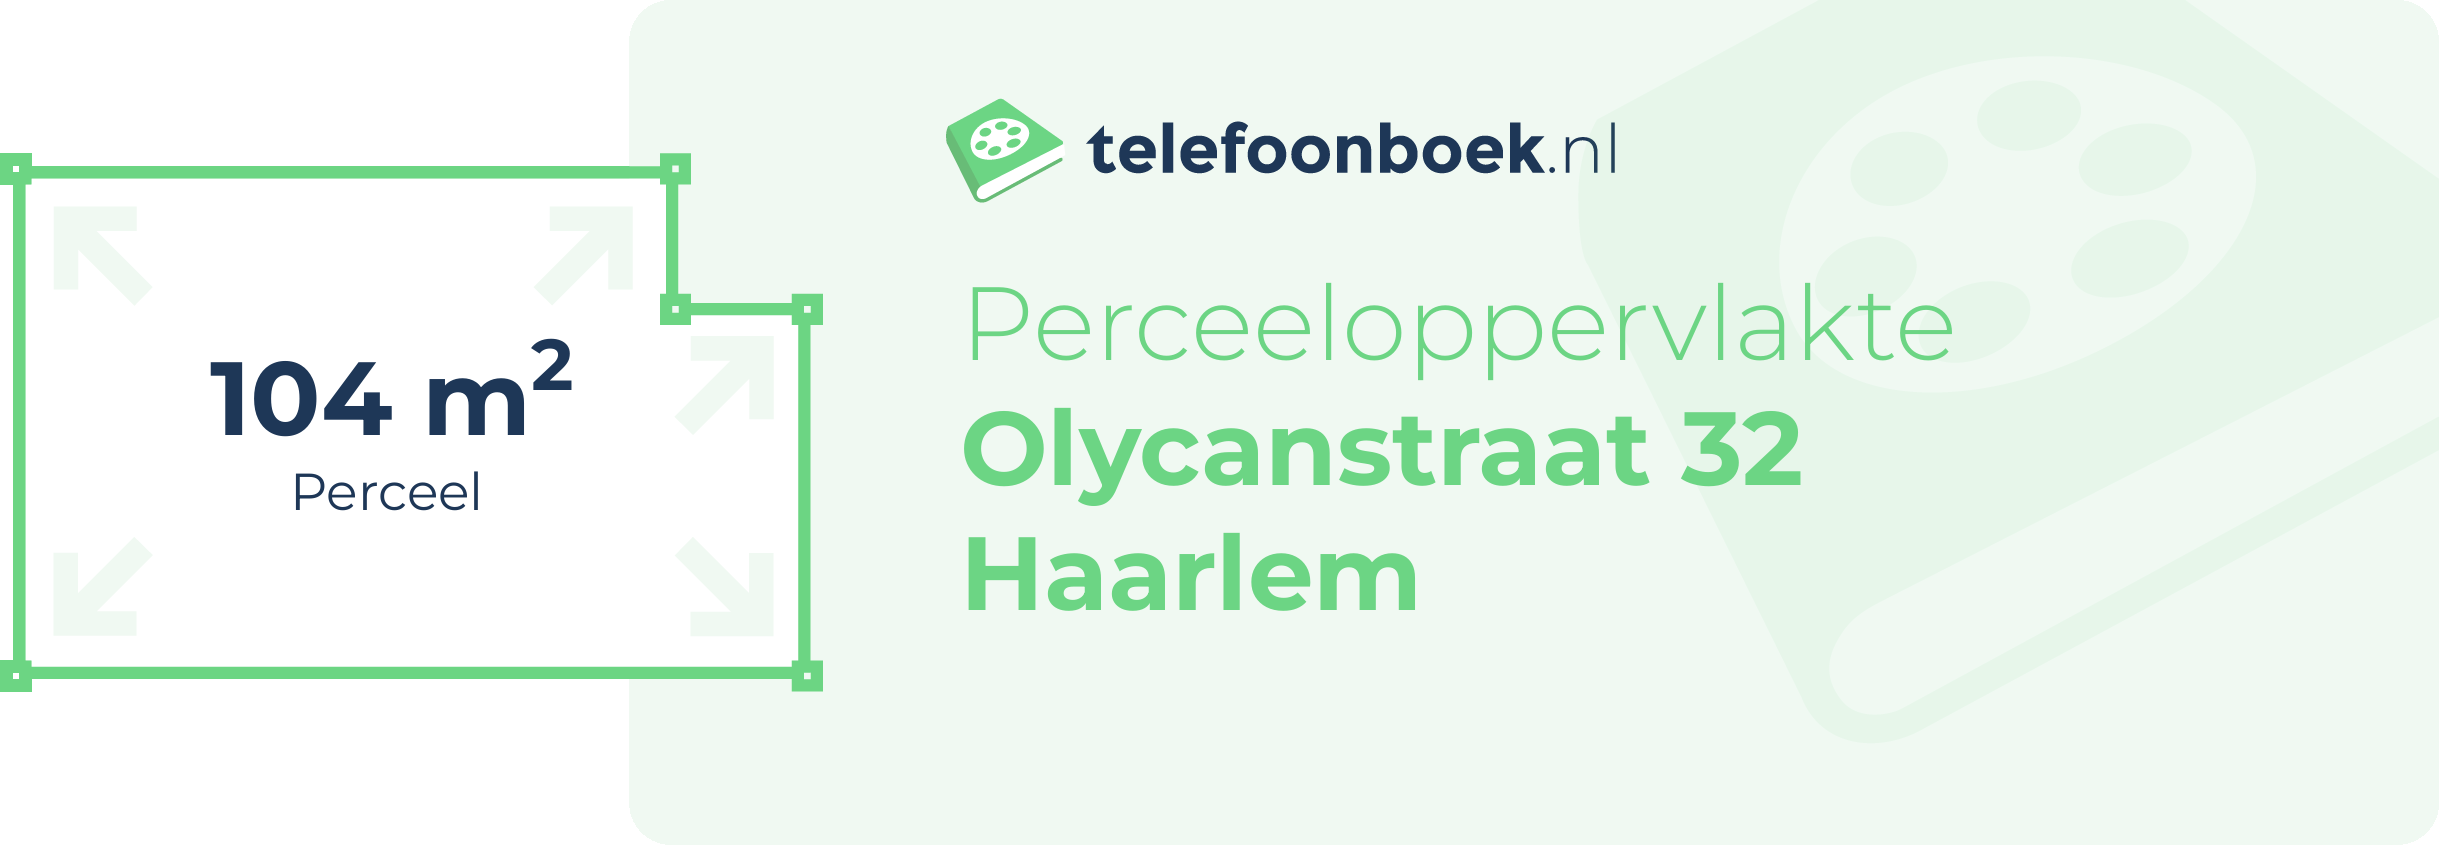 Perceeloppervlakte Olycanstraat 32 Haarlem